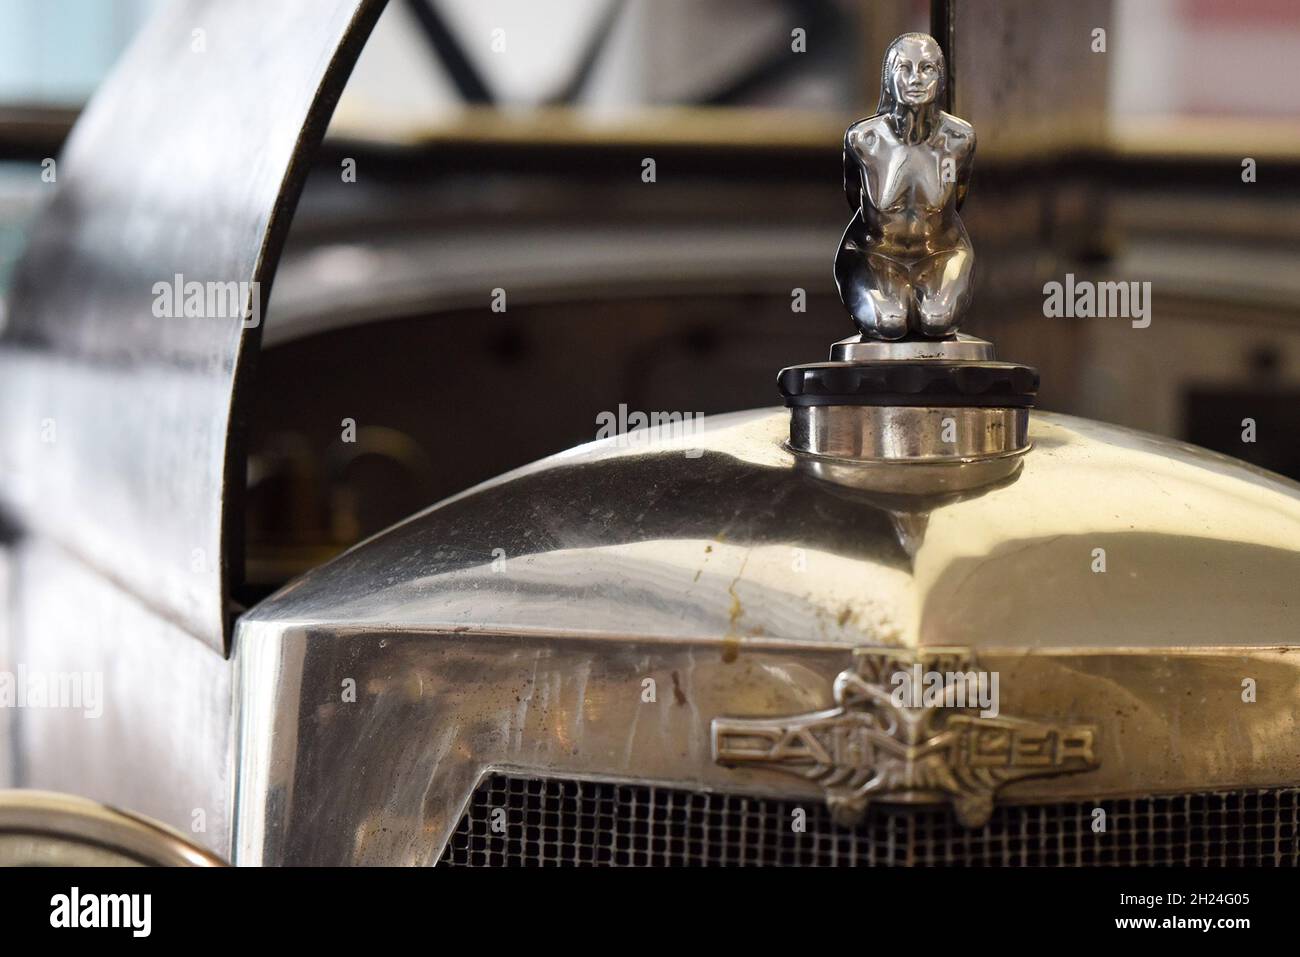 Die Kühlerfigiur eines historischen Austro-Daimler Fahrzeugs im Museum fahr(t)raum in Mattsee, Österreich, Europa - The radiator figure of a historic Stock Photo